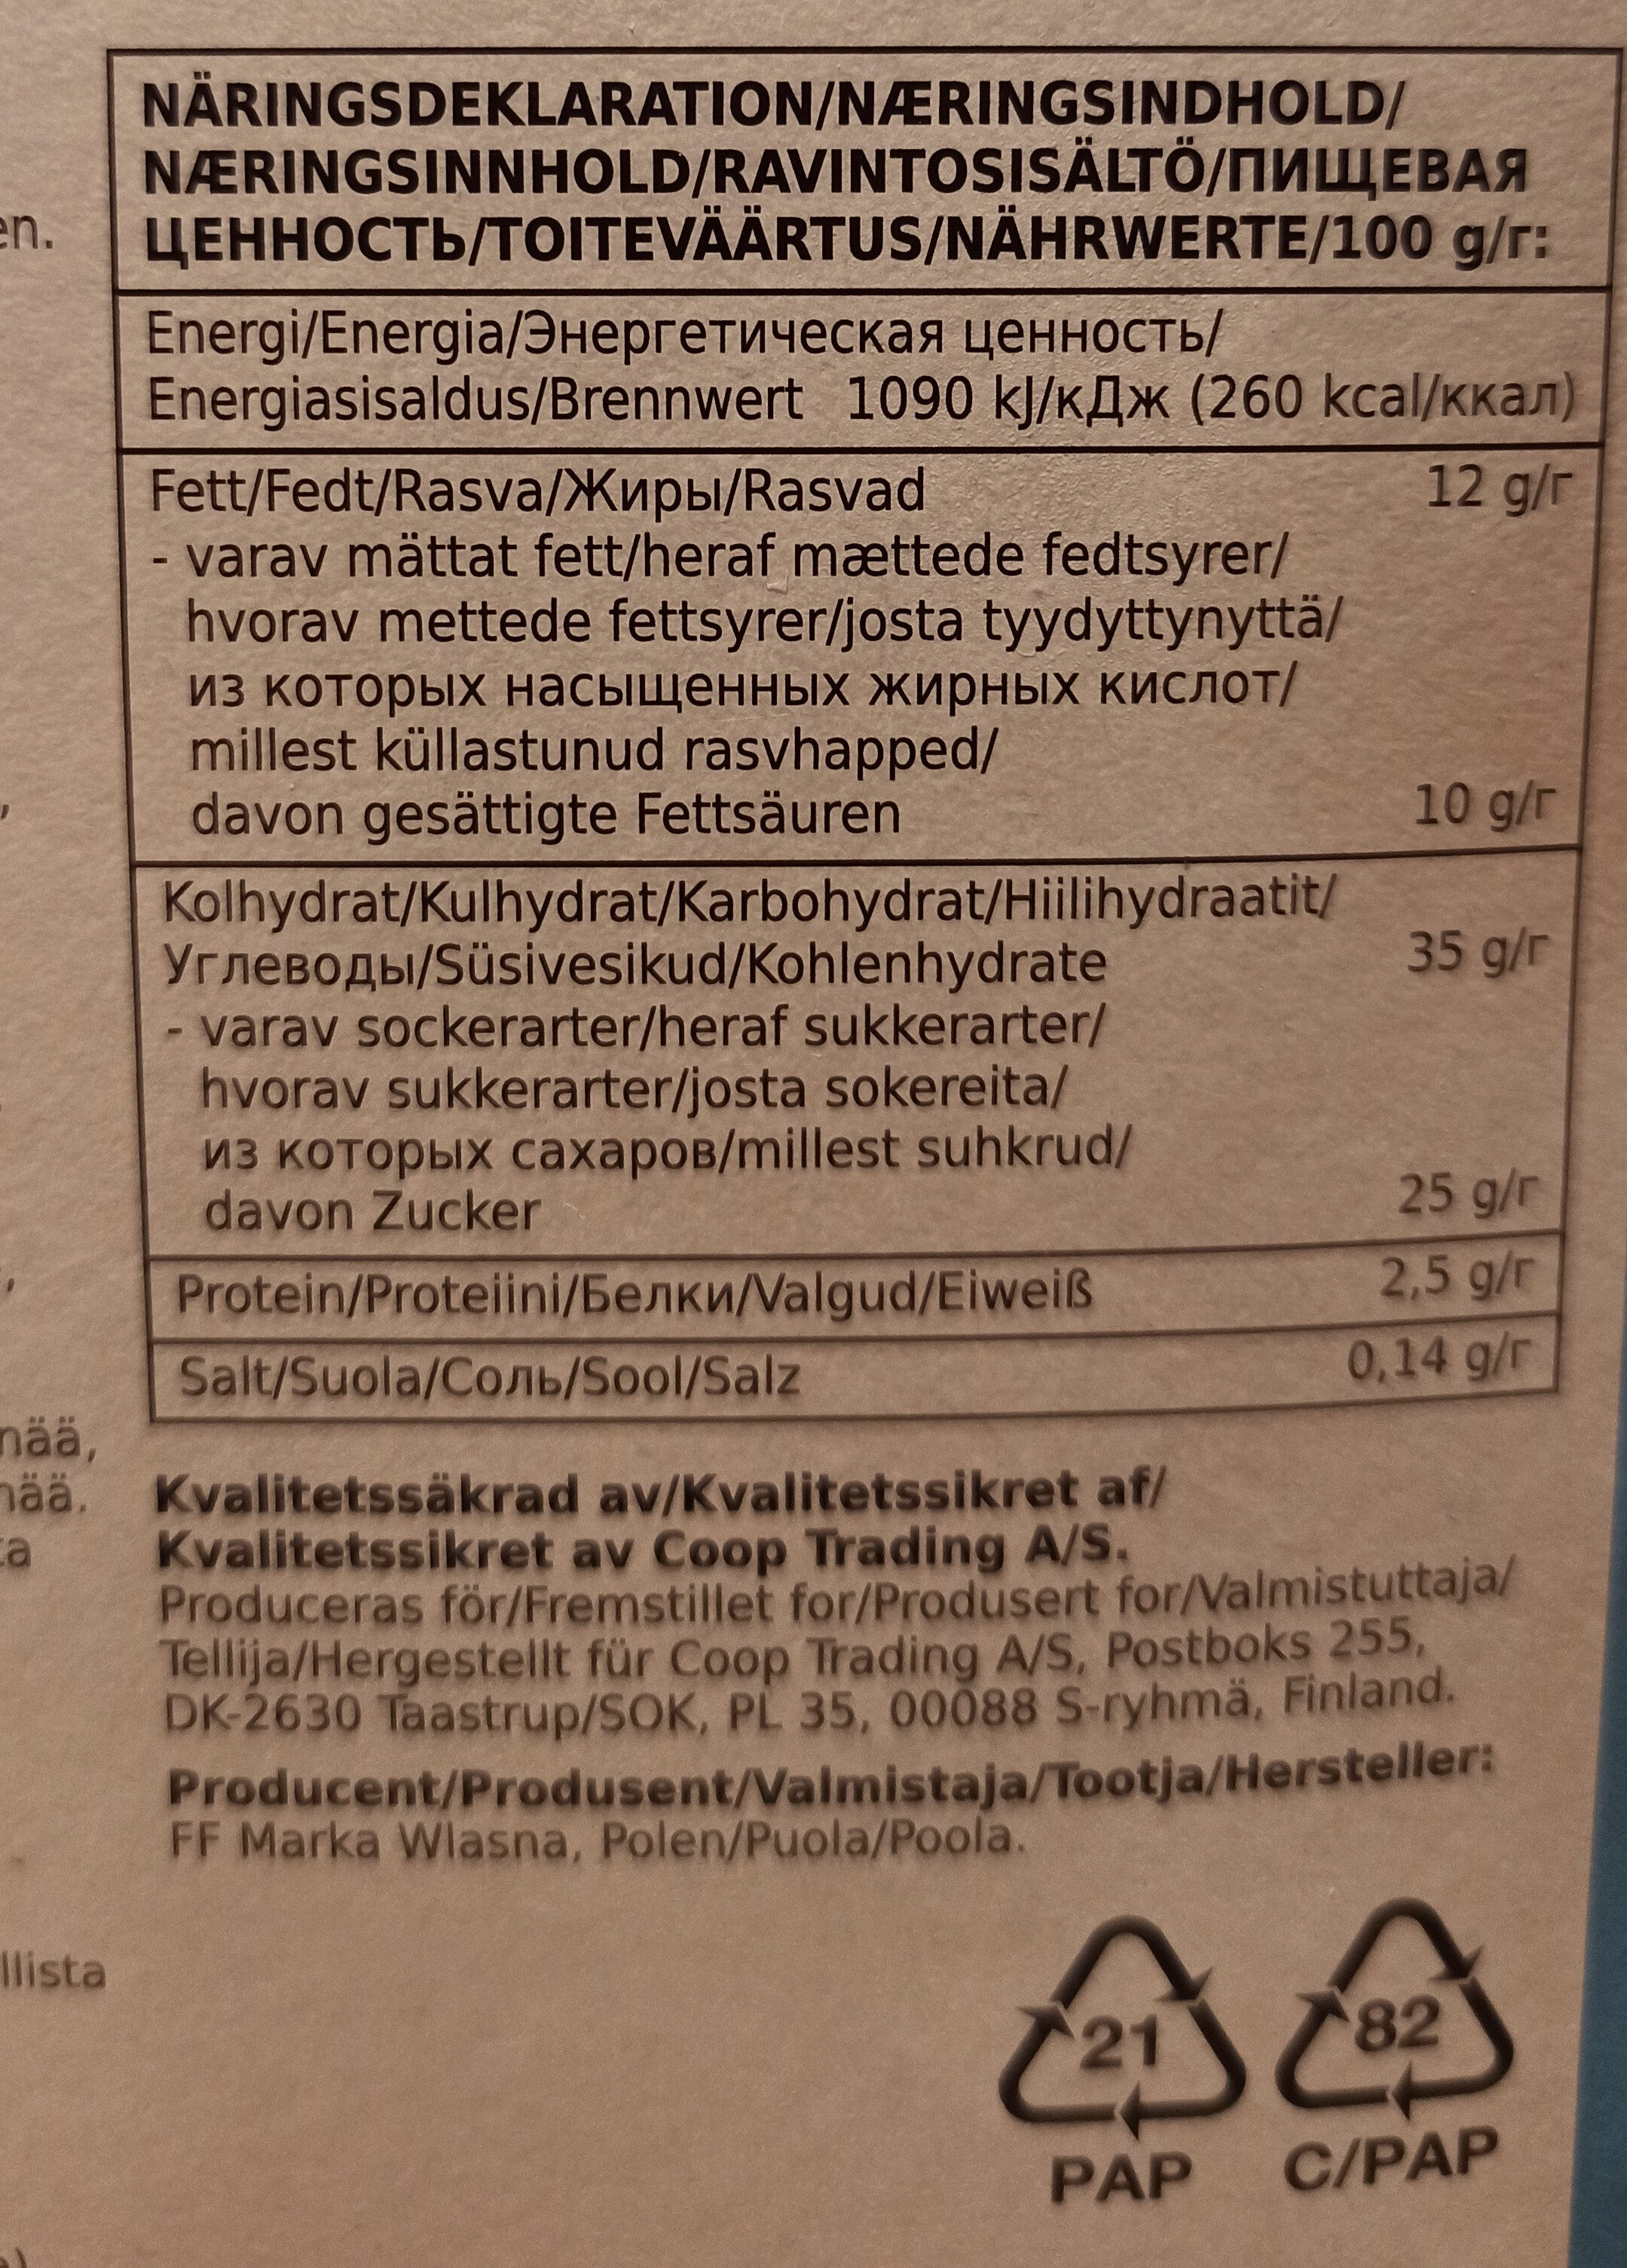 Jäätelötuutit - Ravintosisältö - fi